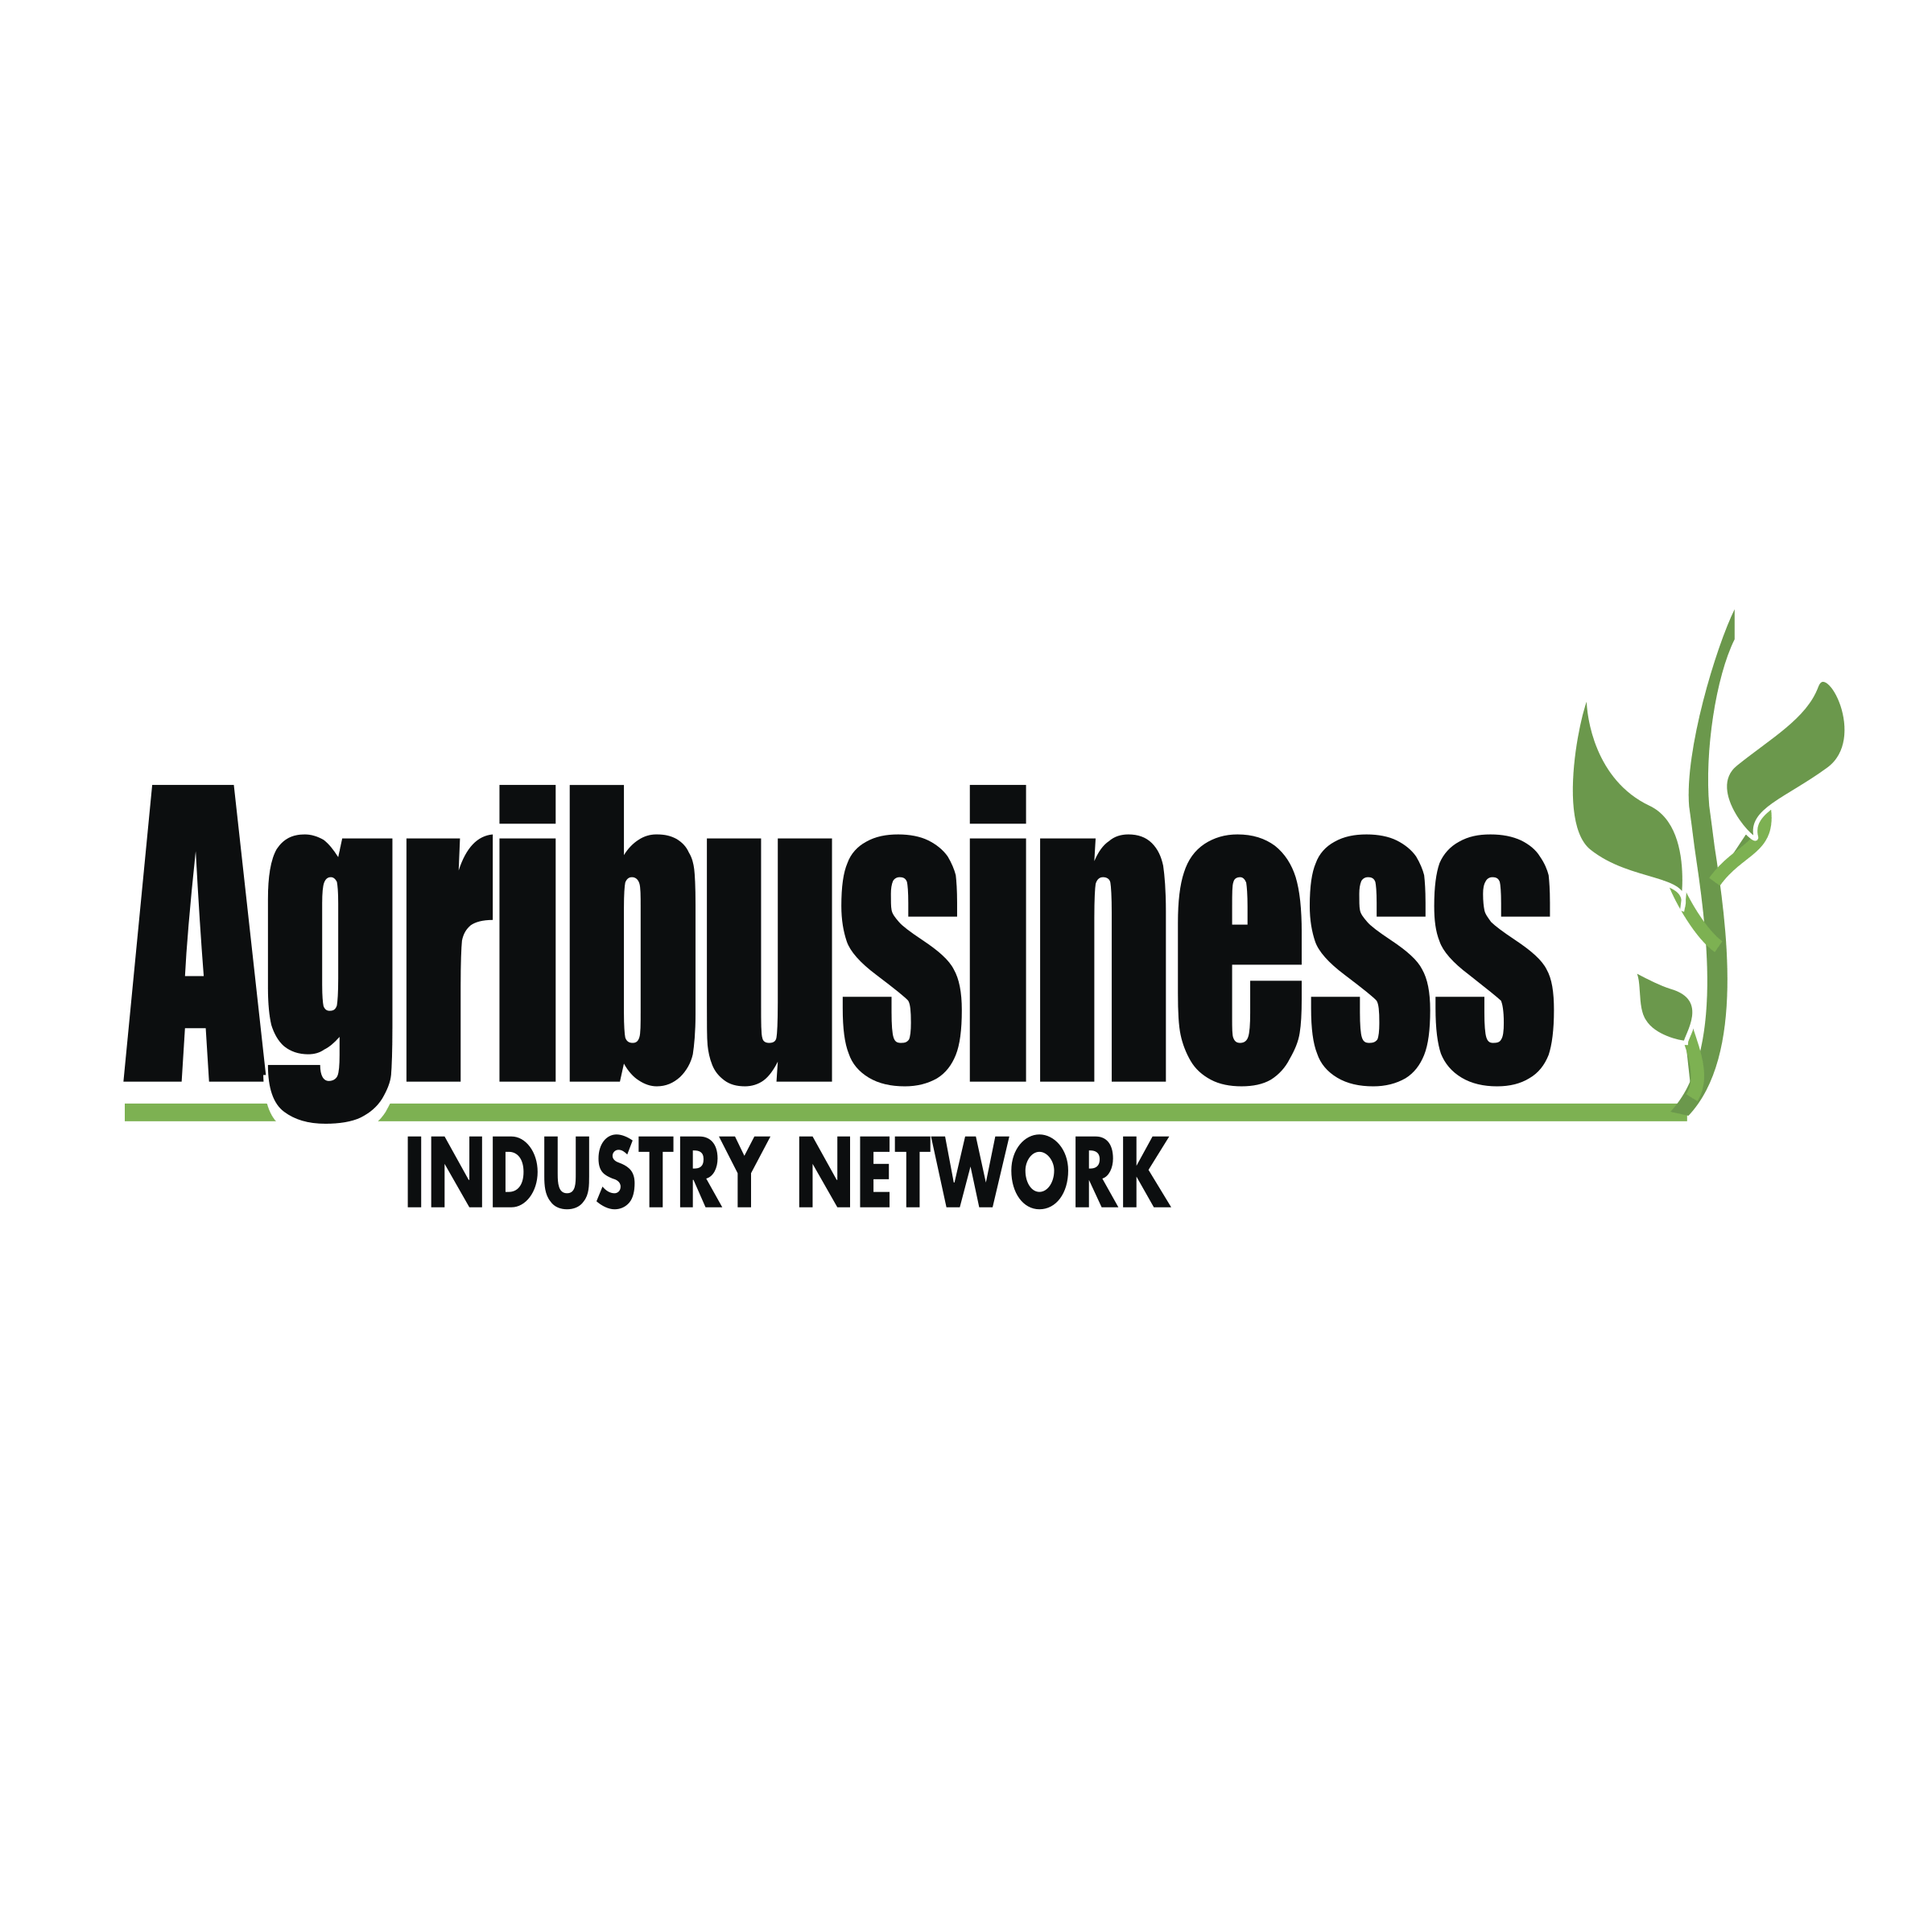 Agribusiness Logo - Agribusiness Industry Network Logo PNG Transparent & SVG Vector